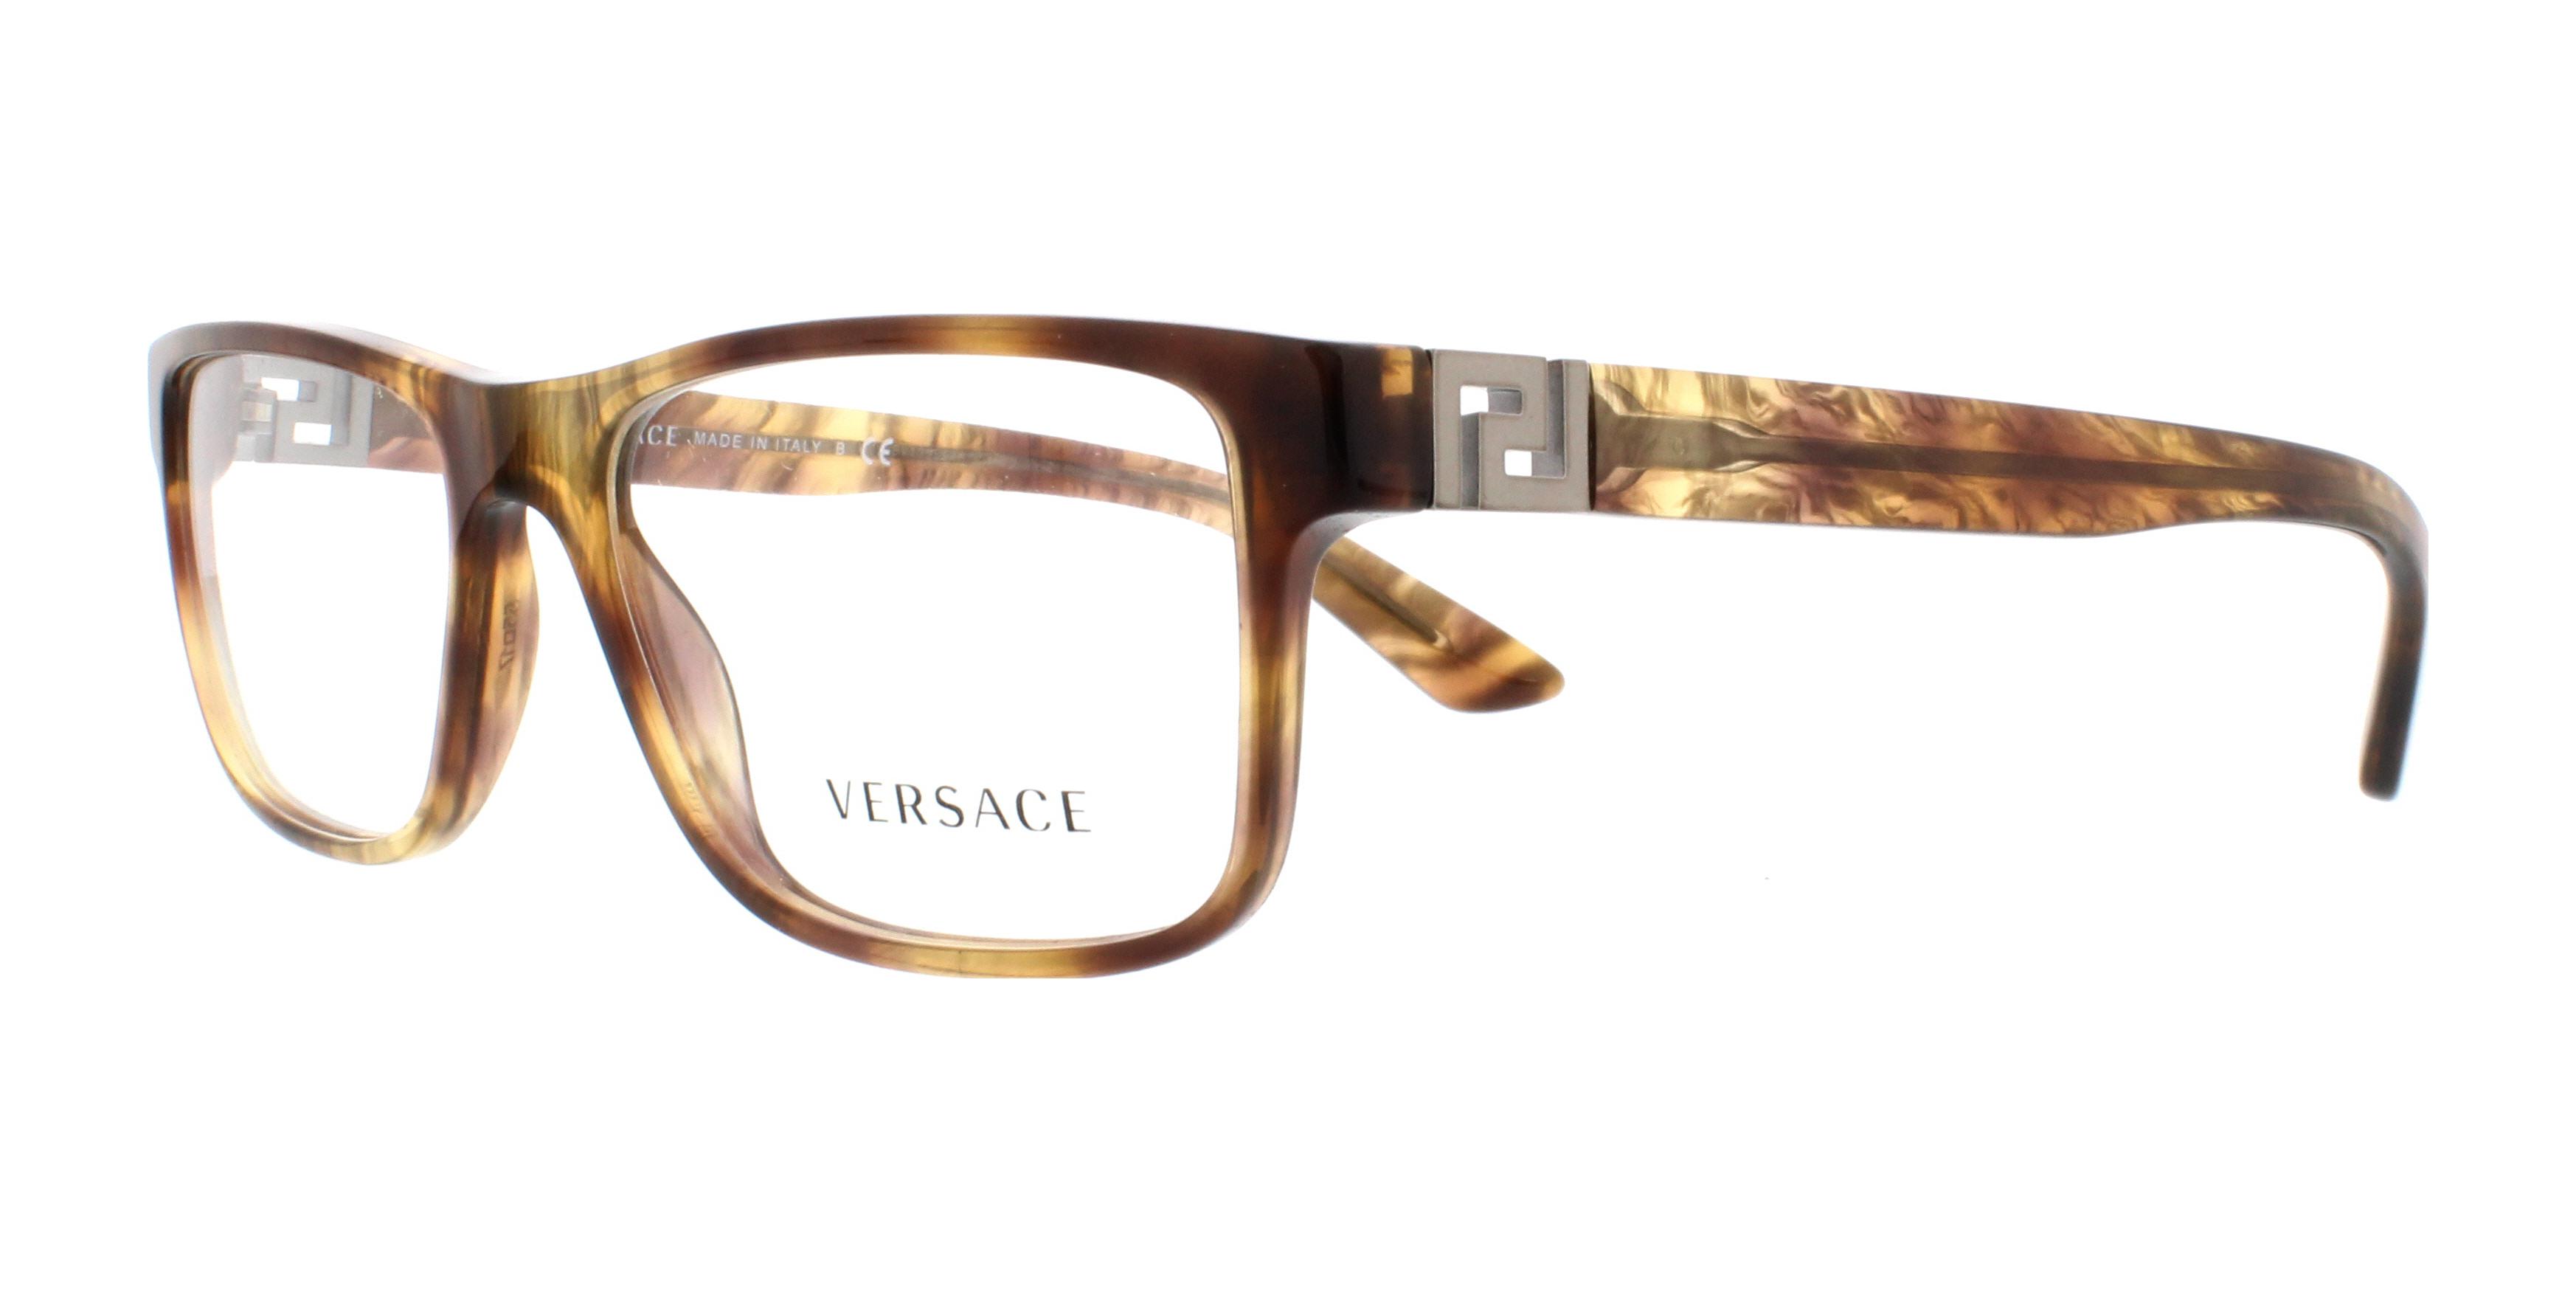 Designer Frames Outlet Versace Eyeglasses Ve3211